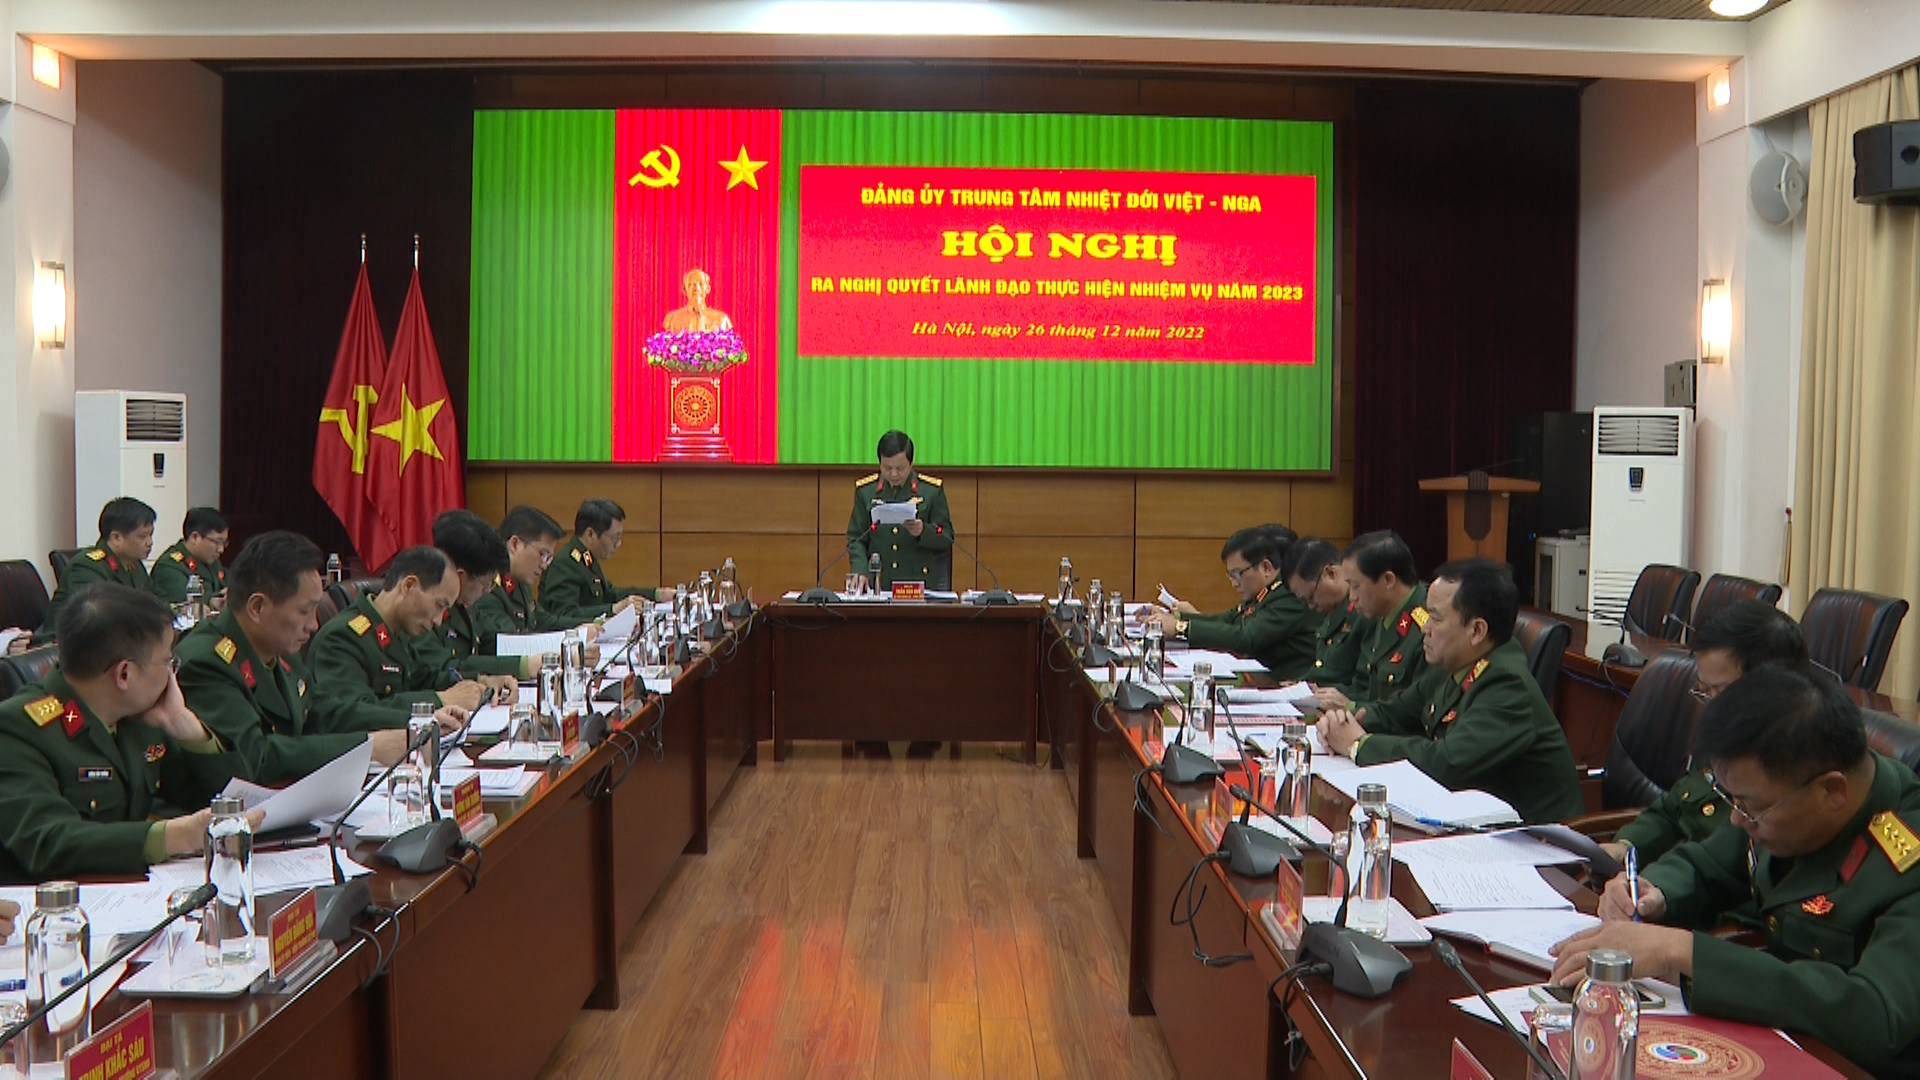 Hội nghị Đảng uỷ Trung tâm Nhiệt đới Việt - Nga ra Nghị quyết lãnh đạo thực hiện nhiệm vụ năm 2023